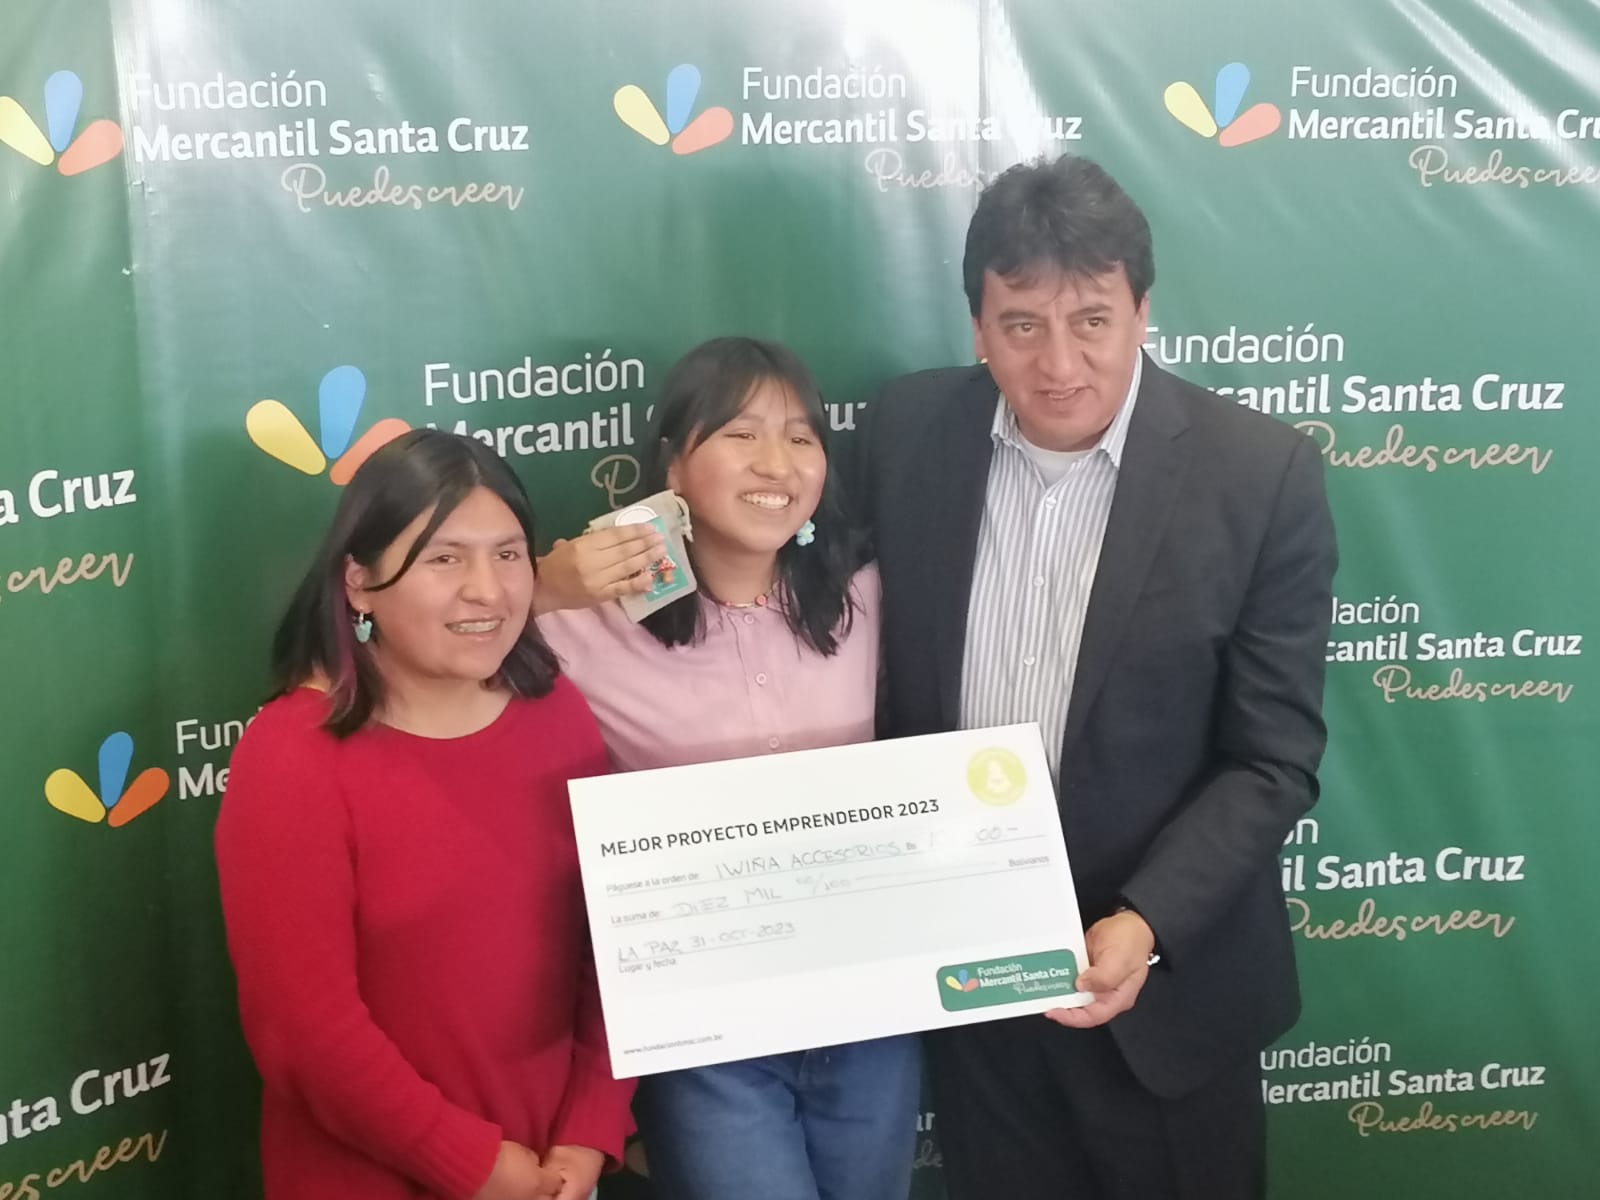 “La Fundación Mercantil Santa Cruz “Puedes Creer”, y la Cooperación Suiza en Bolivia premian a jóvenes talentos del Programa Becas con capital semilla a través del Programa de Fortalecimiento de Emprendimientos”.